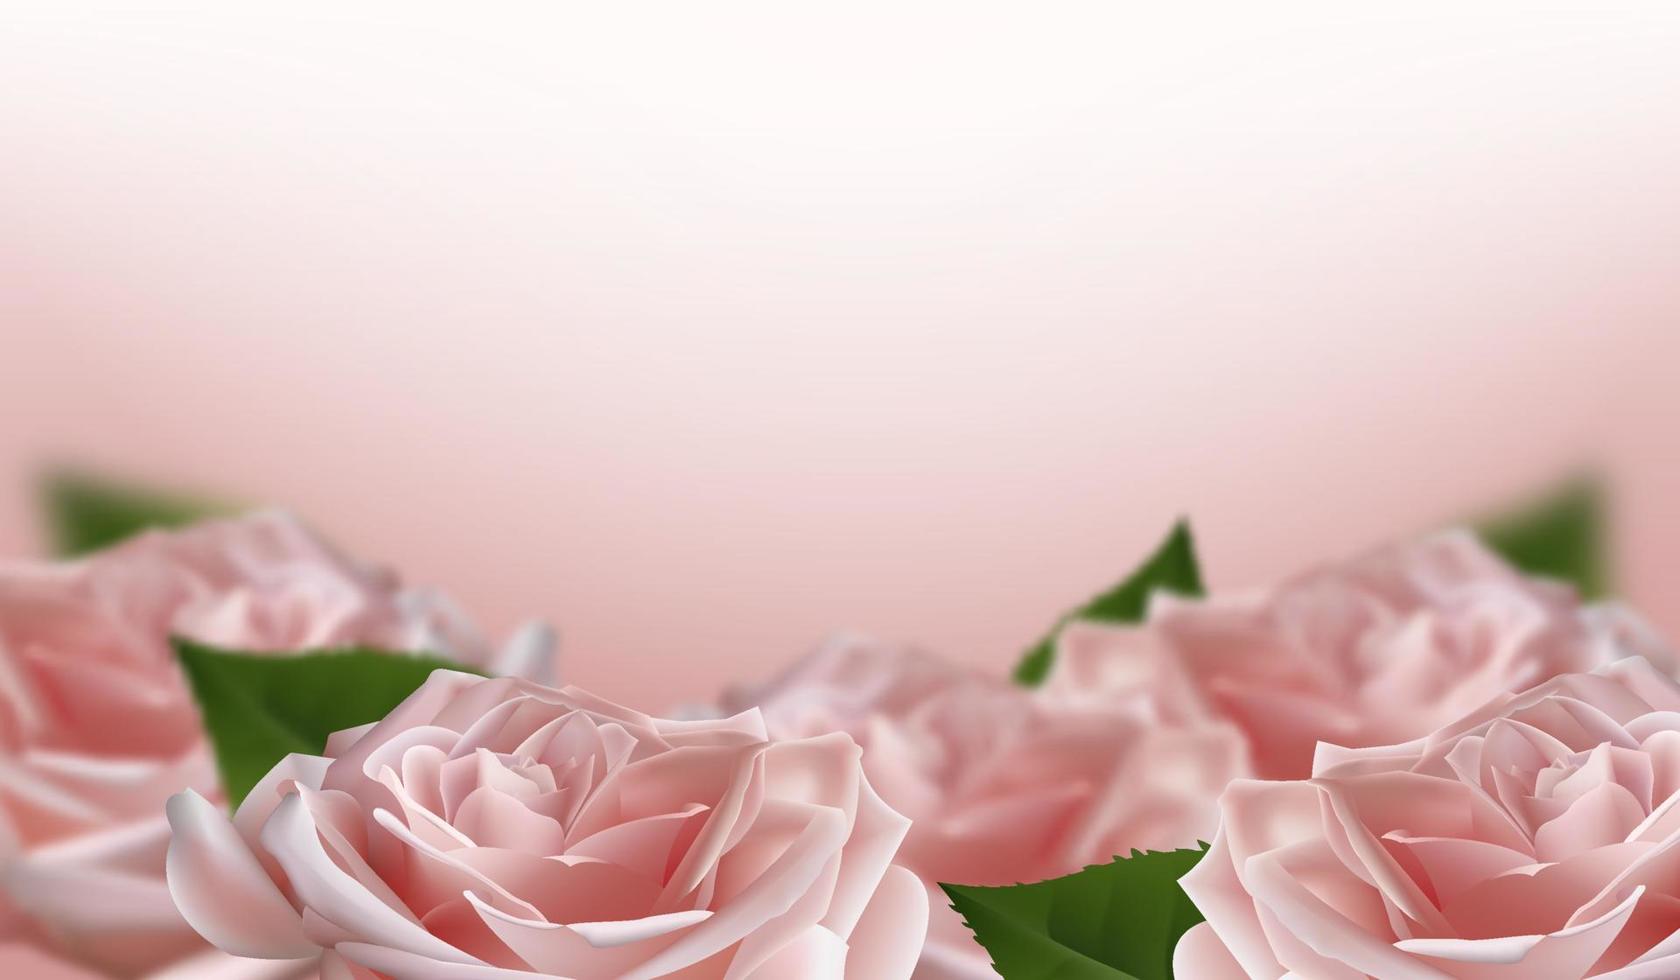 flores rosas 3d rosa realistas sobre fundo branco. ilustração vetorial vetor